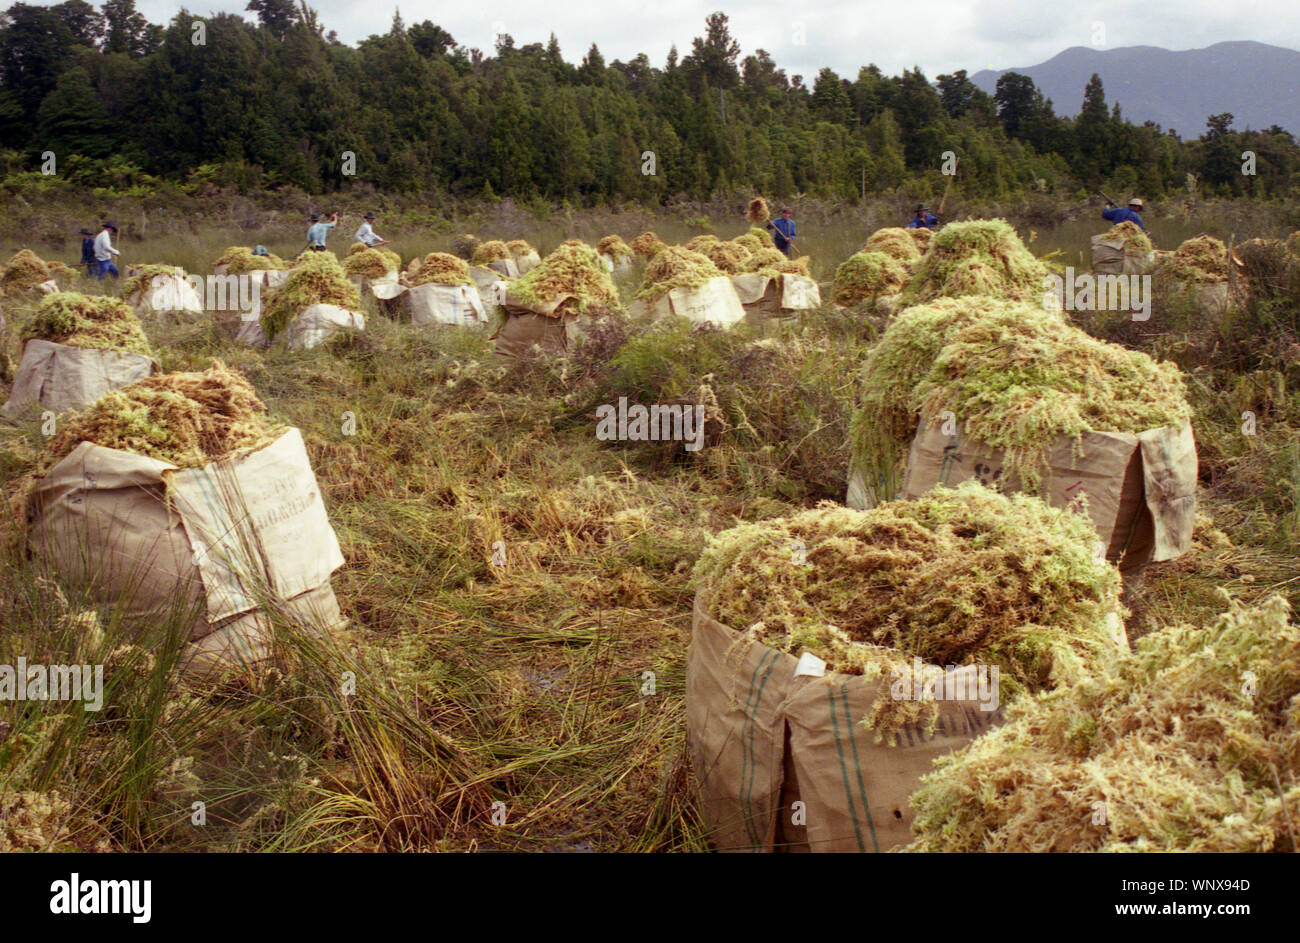 Sacchetti di sphagnum moss a moss operazione di raccolta, Costa Ovest, South Island, in Nuova Zelanda. circa del 1996. Moss la raccolta non utilizza macchinari di grandi dimensioni ed è pienamente sostenibile, con la ricrescita in 3 - 5 anni. Foto Stock